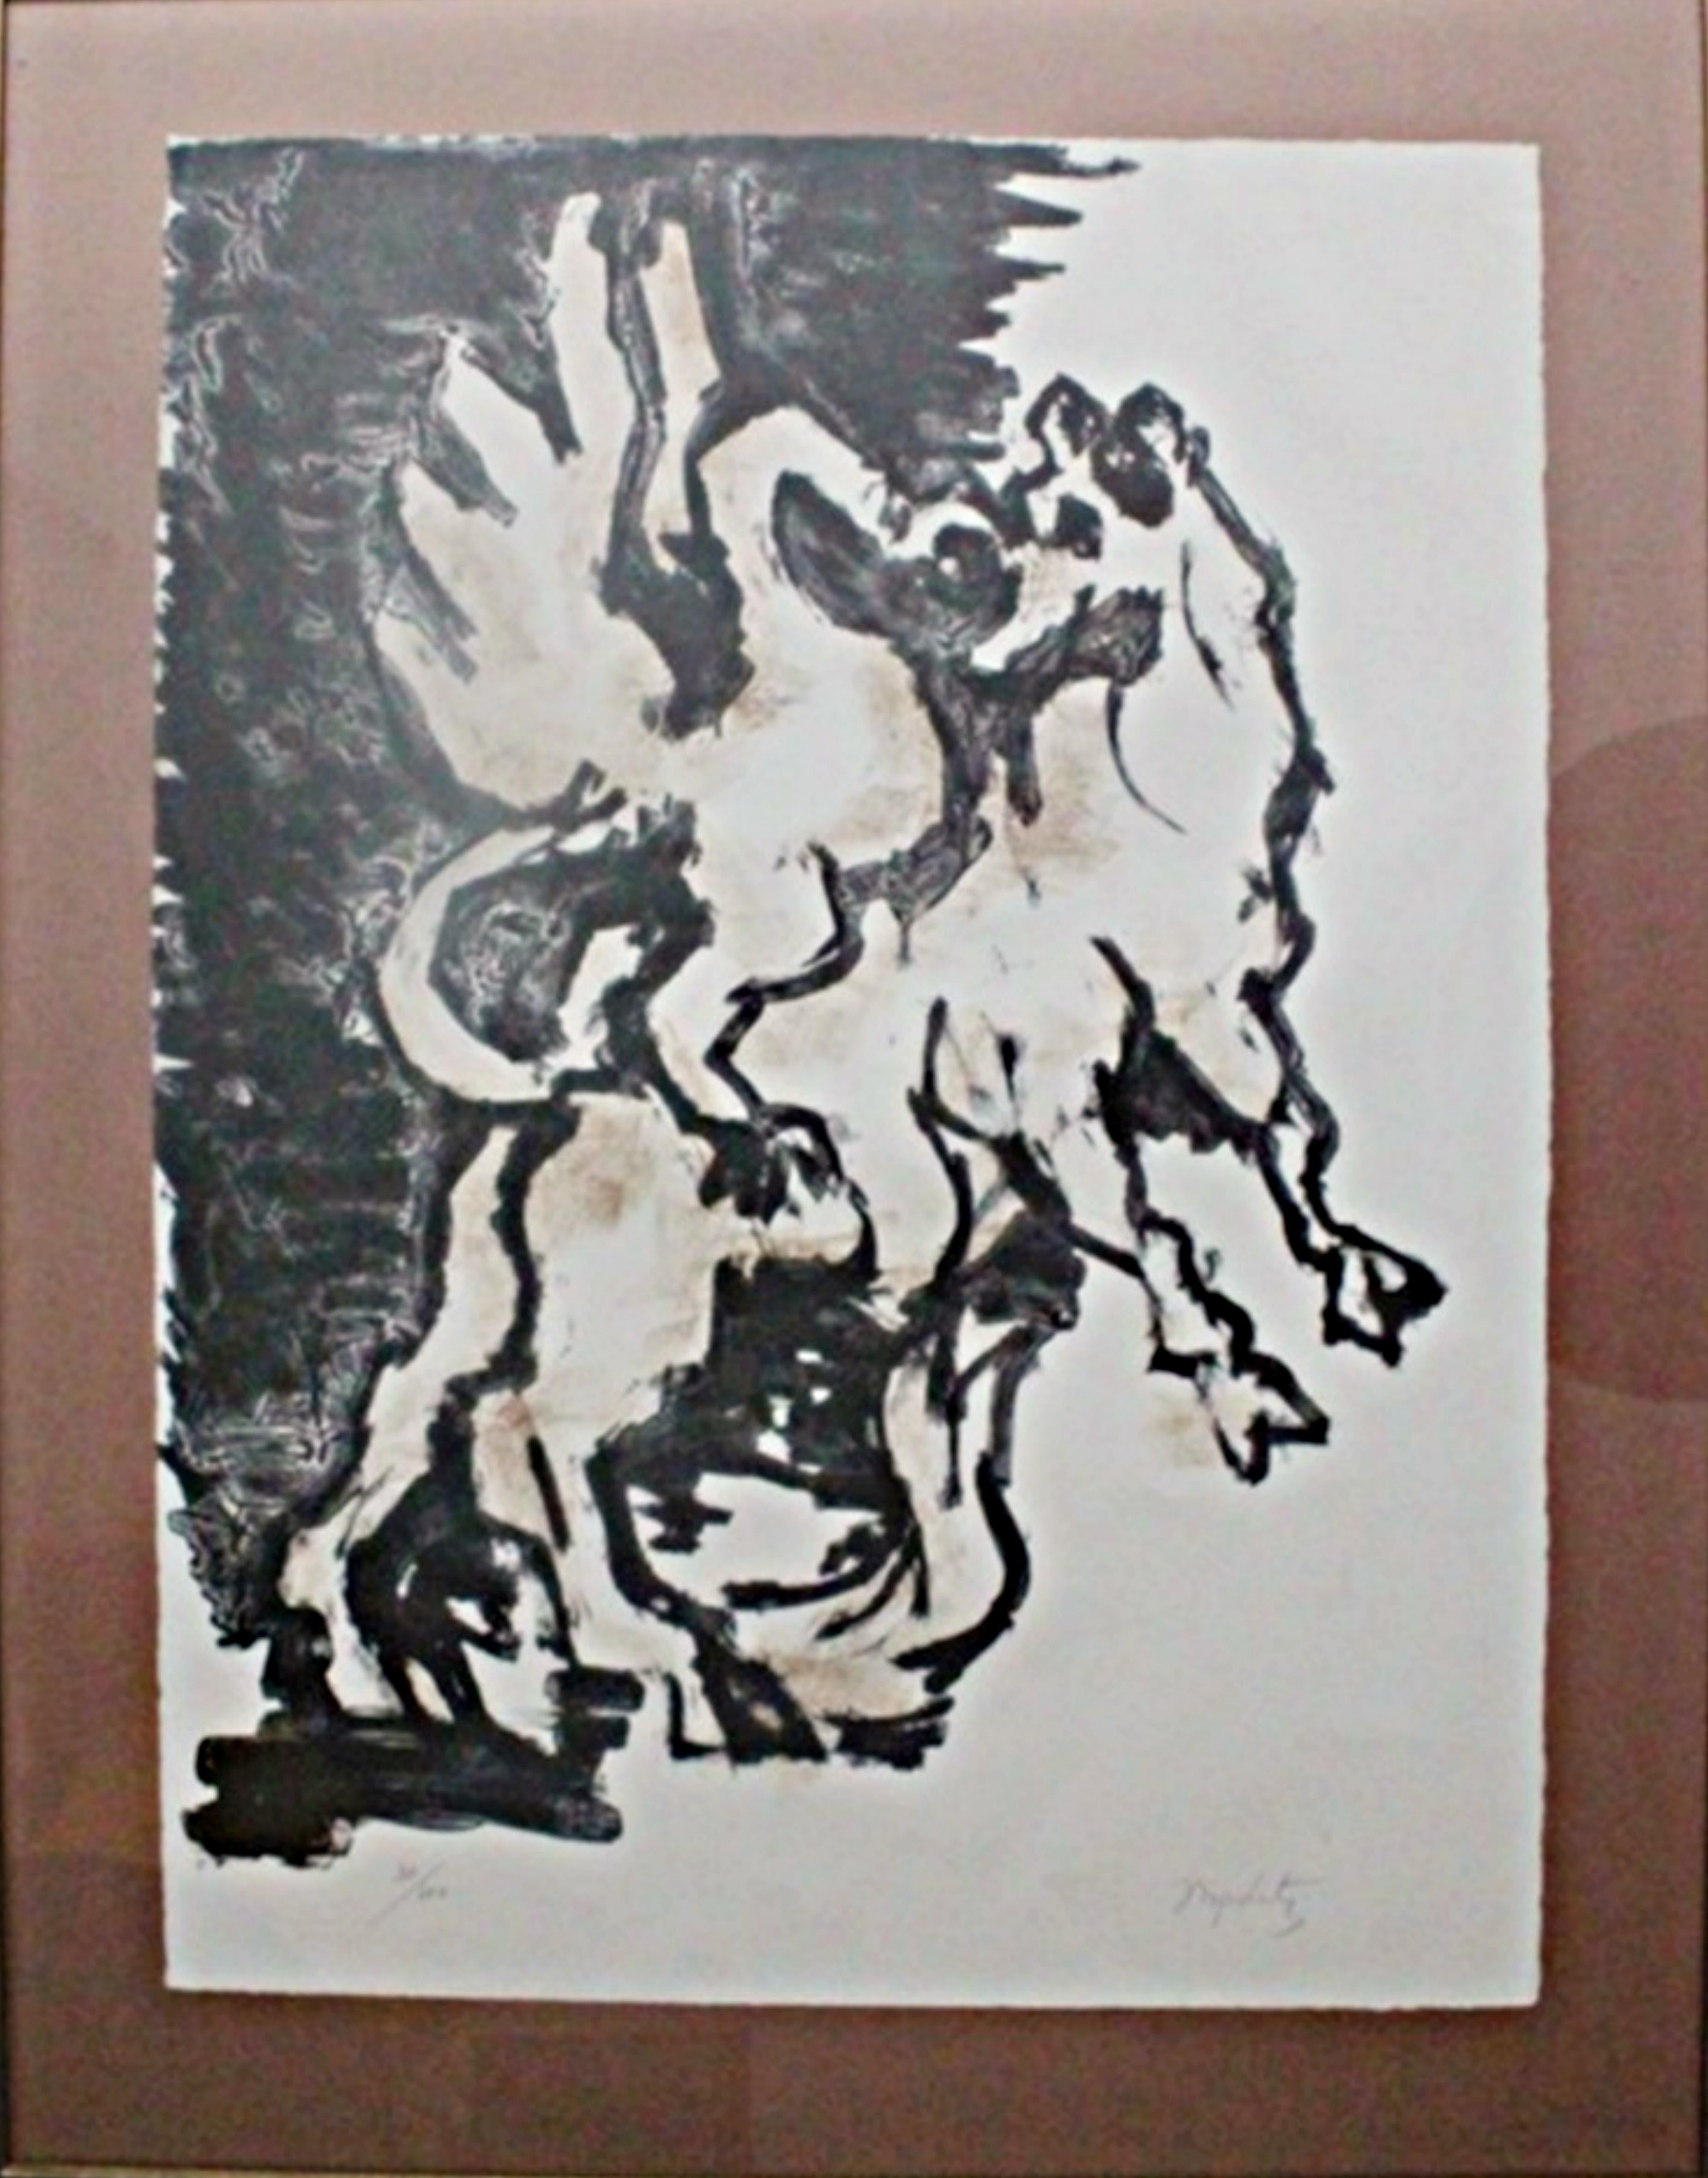 Jacques Lipchitz
Der Stier und der Kondor, 1962
Lithographie auf Rives BFK Papier
Vom Künstler mit Bleistift signiert und nummeriert 30/100; mit dem Blindstempel des Verlegers, Tamarind Workshop, und des Druckermeisters, Emilion Soriani.
28 × 20